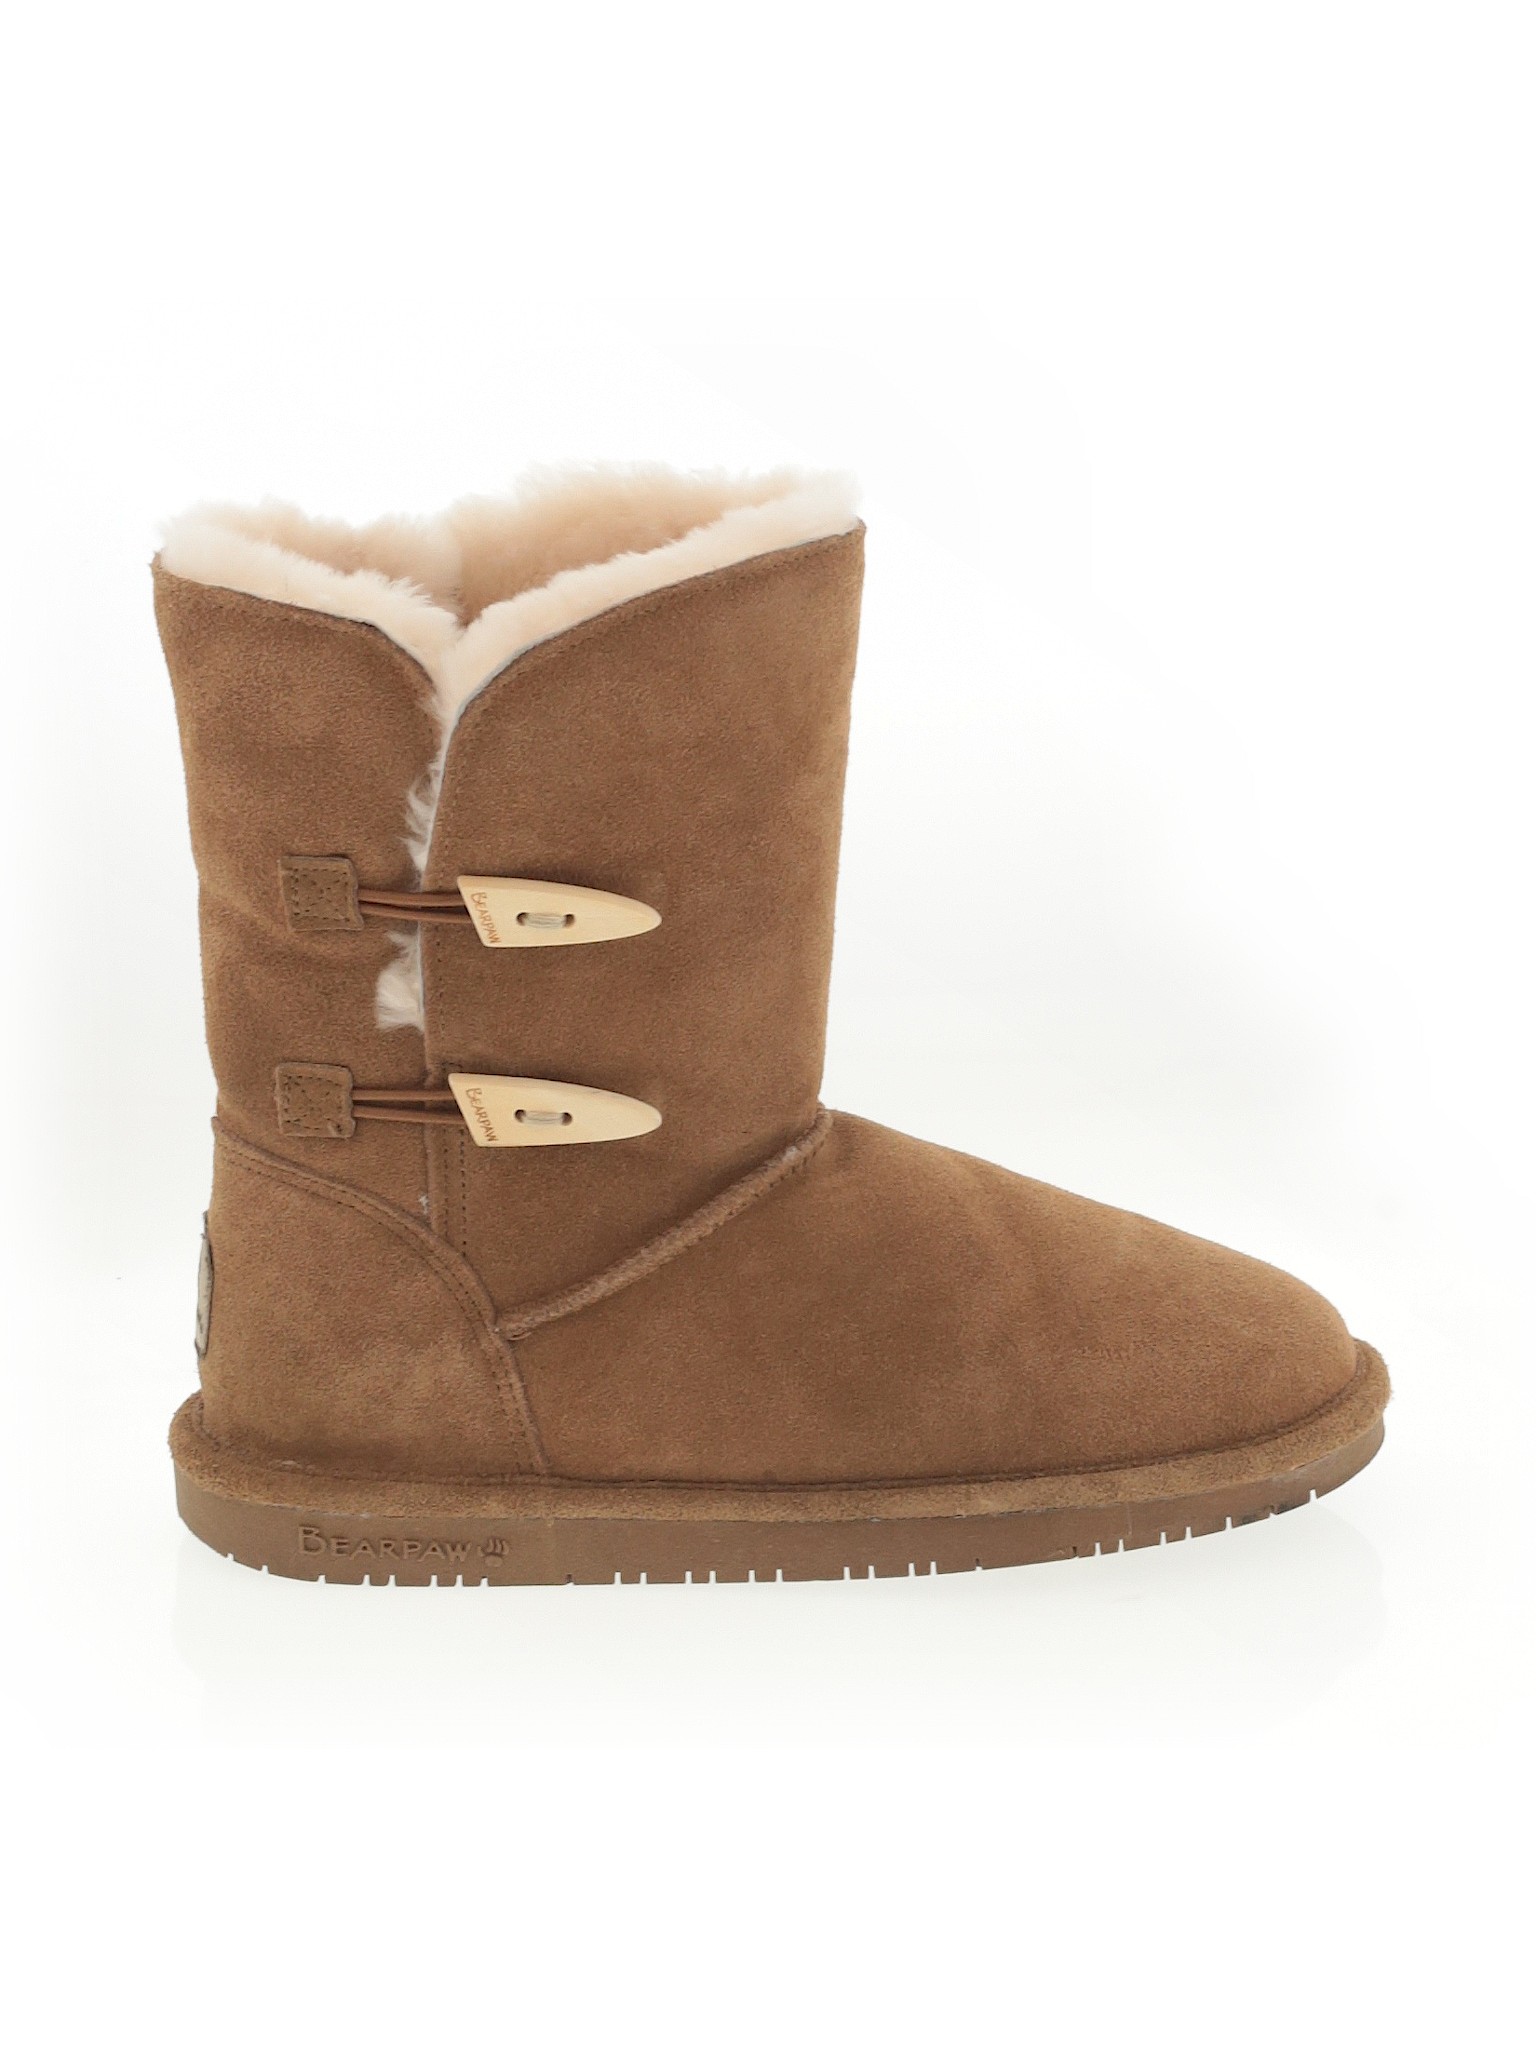 Bearpaw Women Brown Boots US 8 | eBay